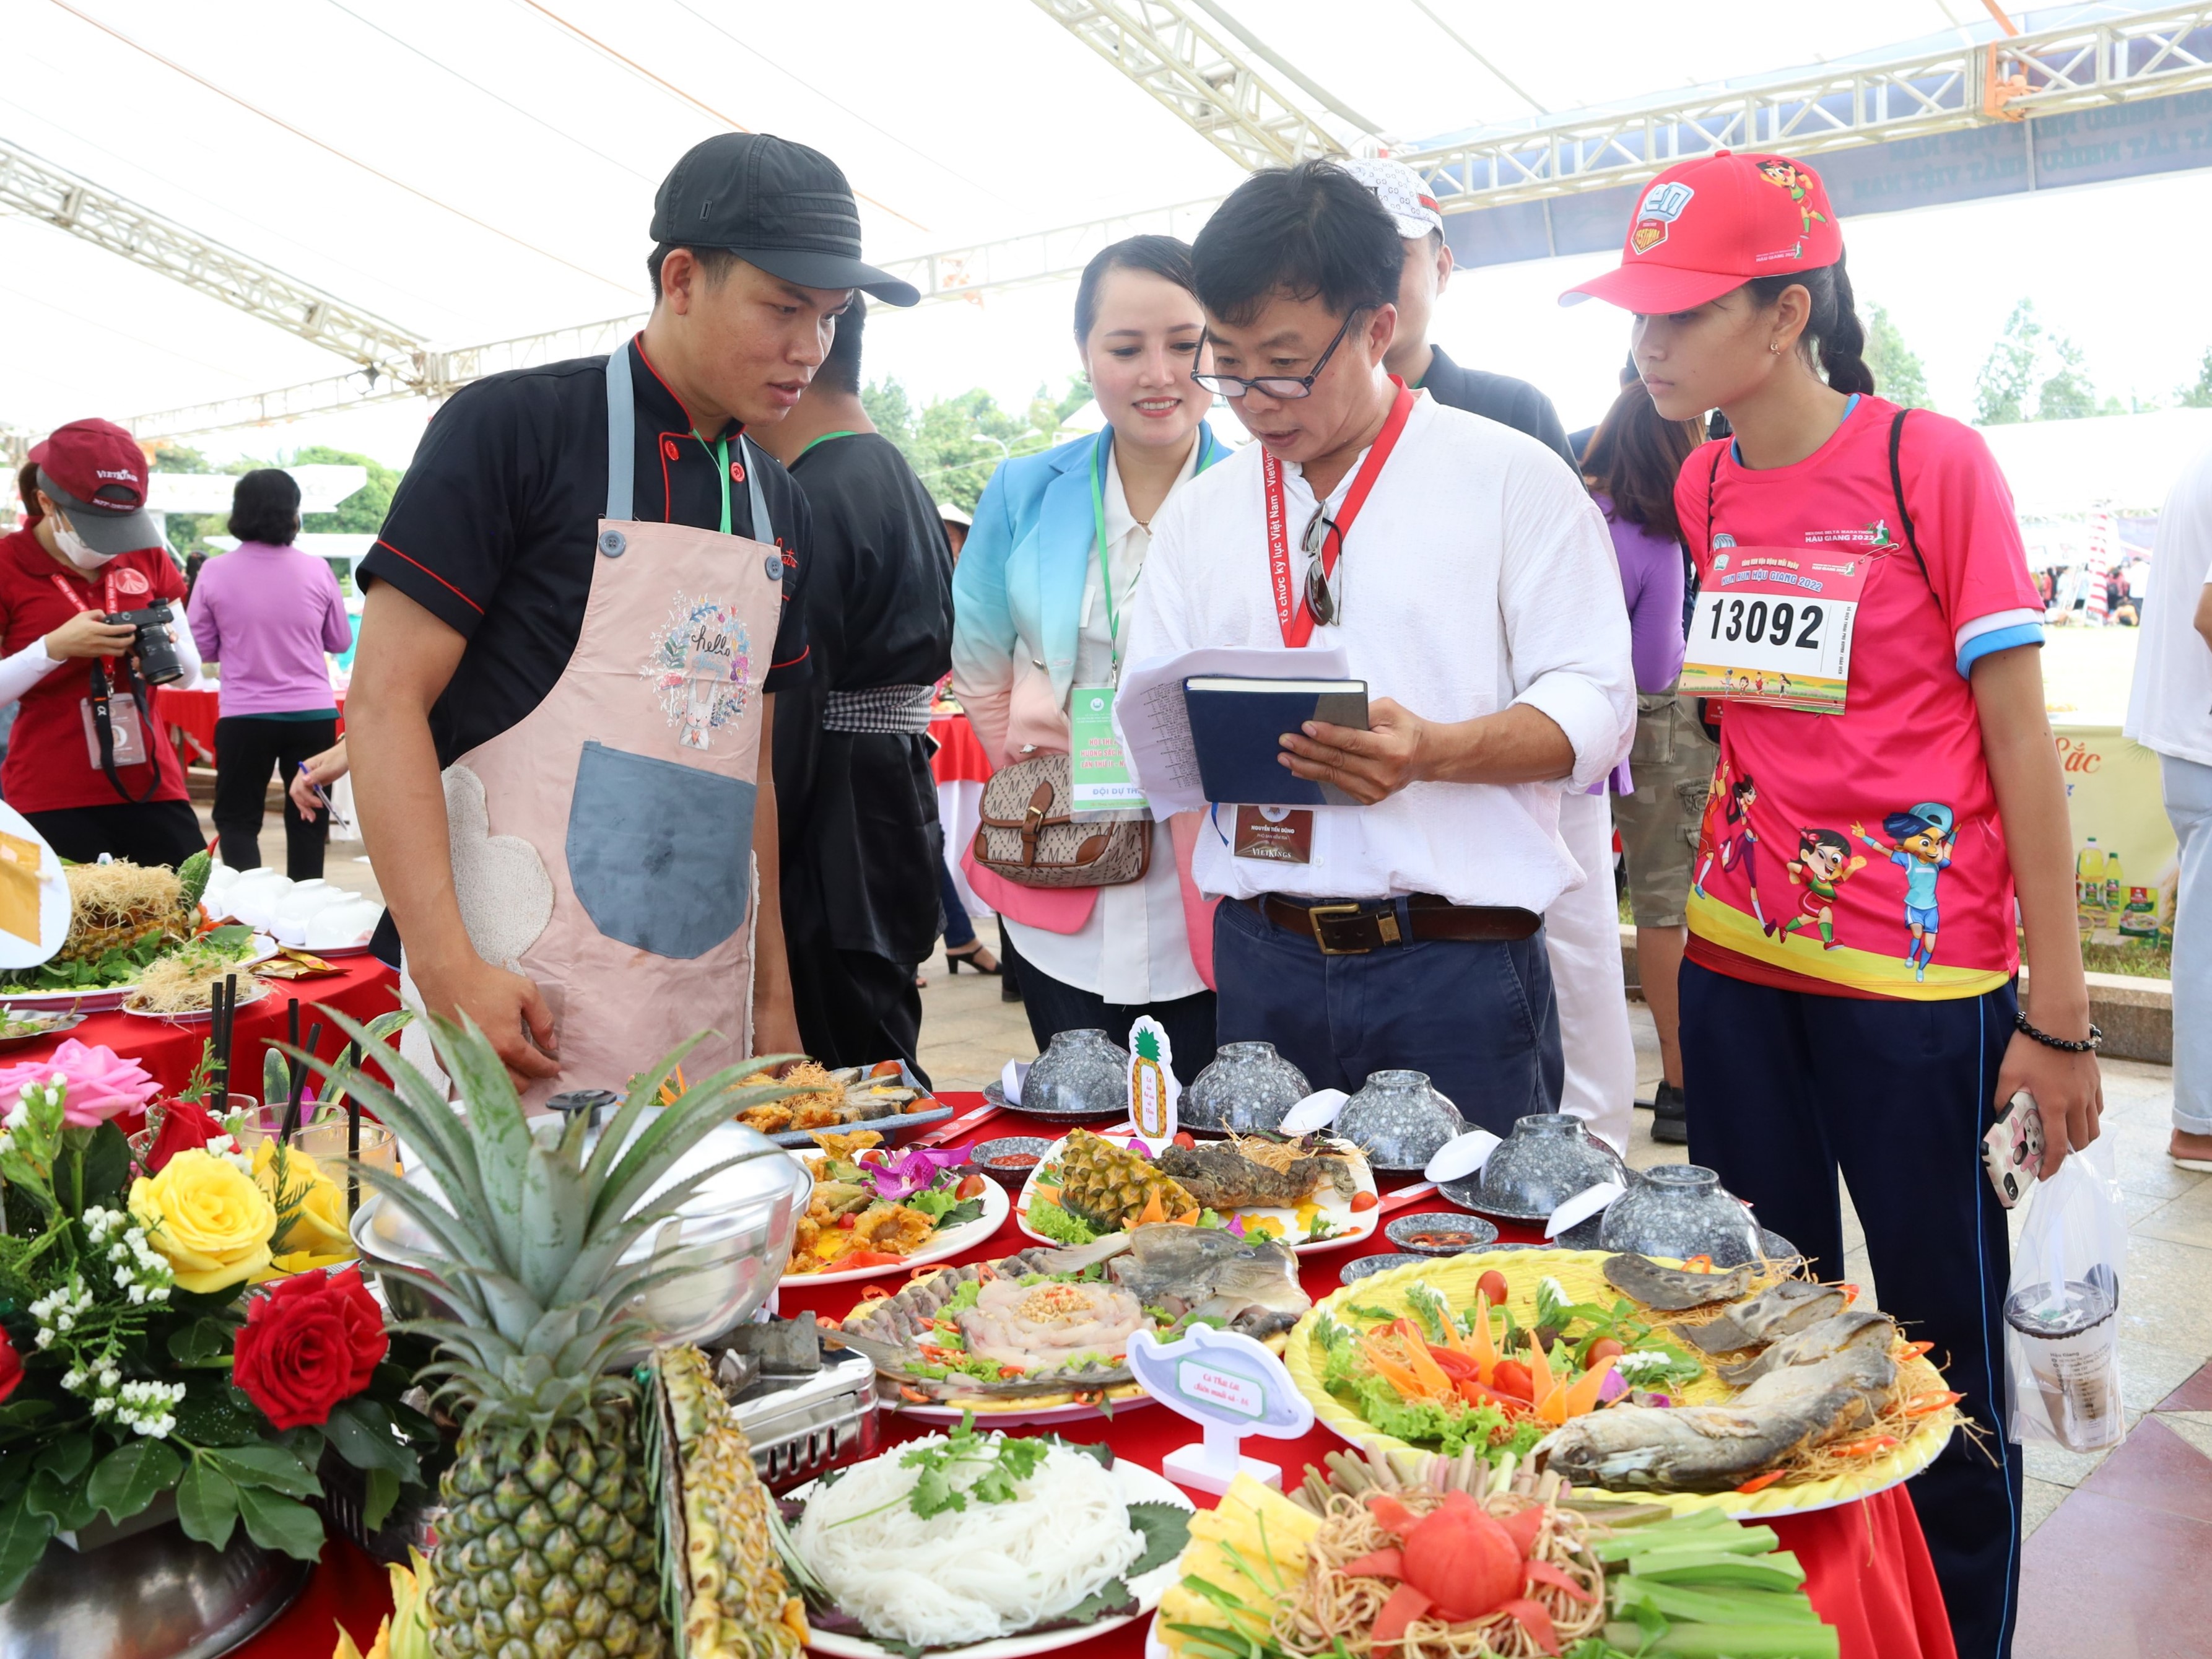 Đại diện ban giám sát của Tổ chức Kỷ lục Việt Nam thực hiện kiểm đếm số lượng, ghi nhận biên bản theo danh sách món ăn đã đăng ký của đơn vị.